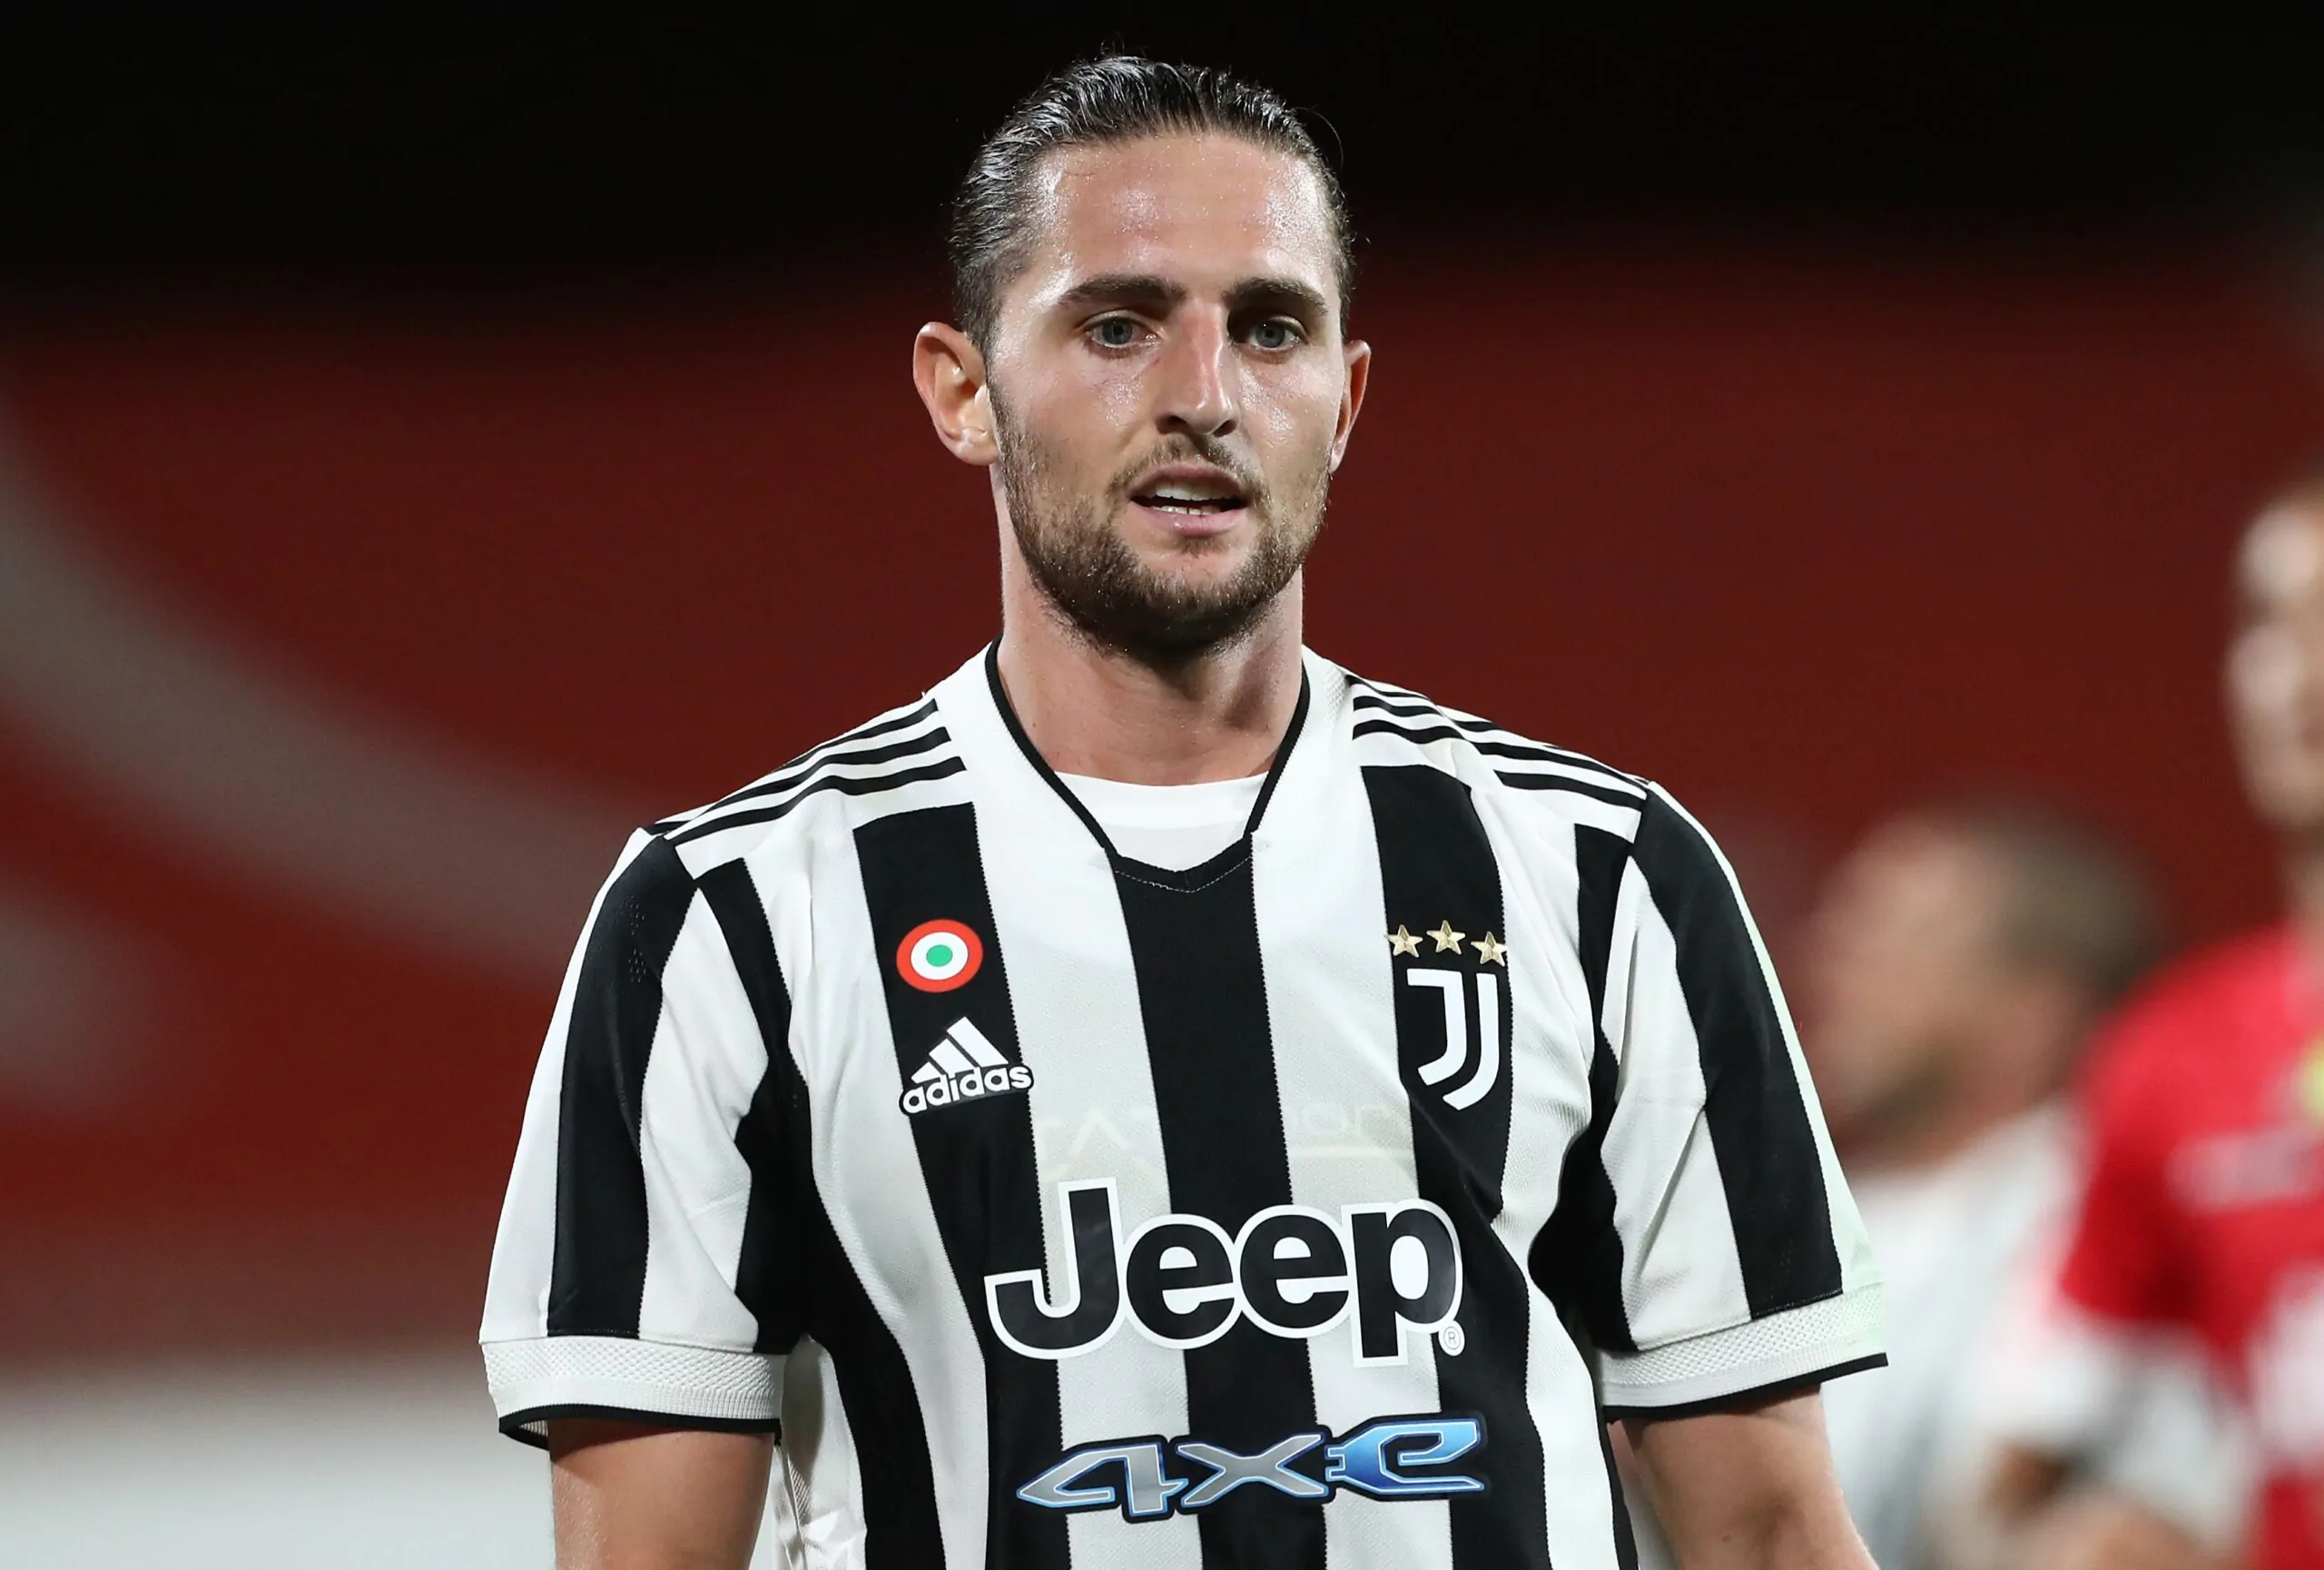 L’attacco a Rabiot: “Non dovrebbe nemmeno vestire la maglia della Juventus!”